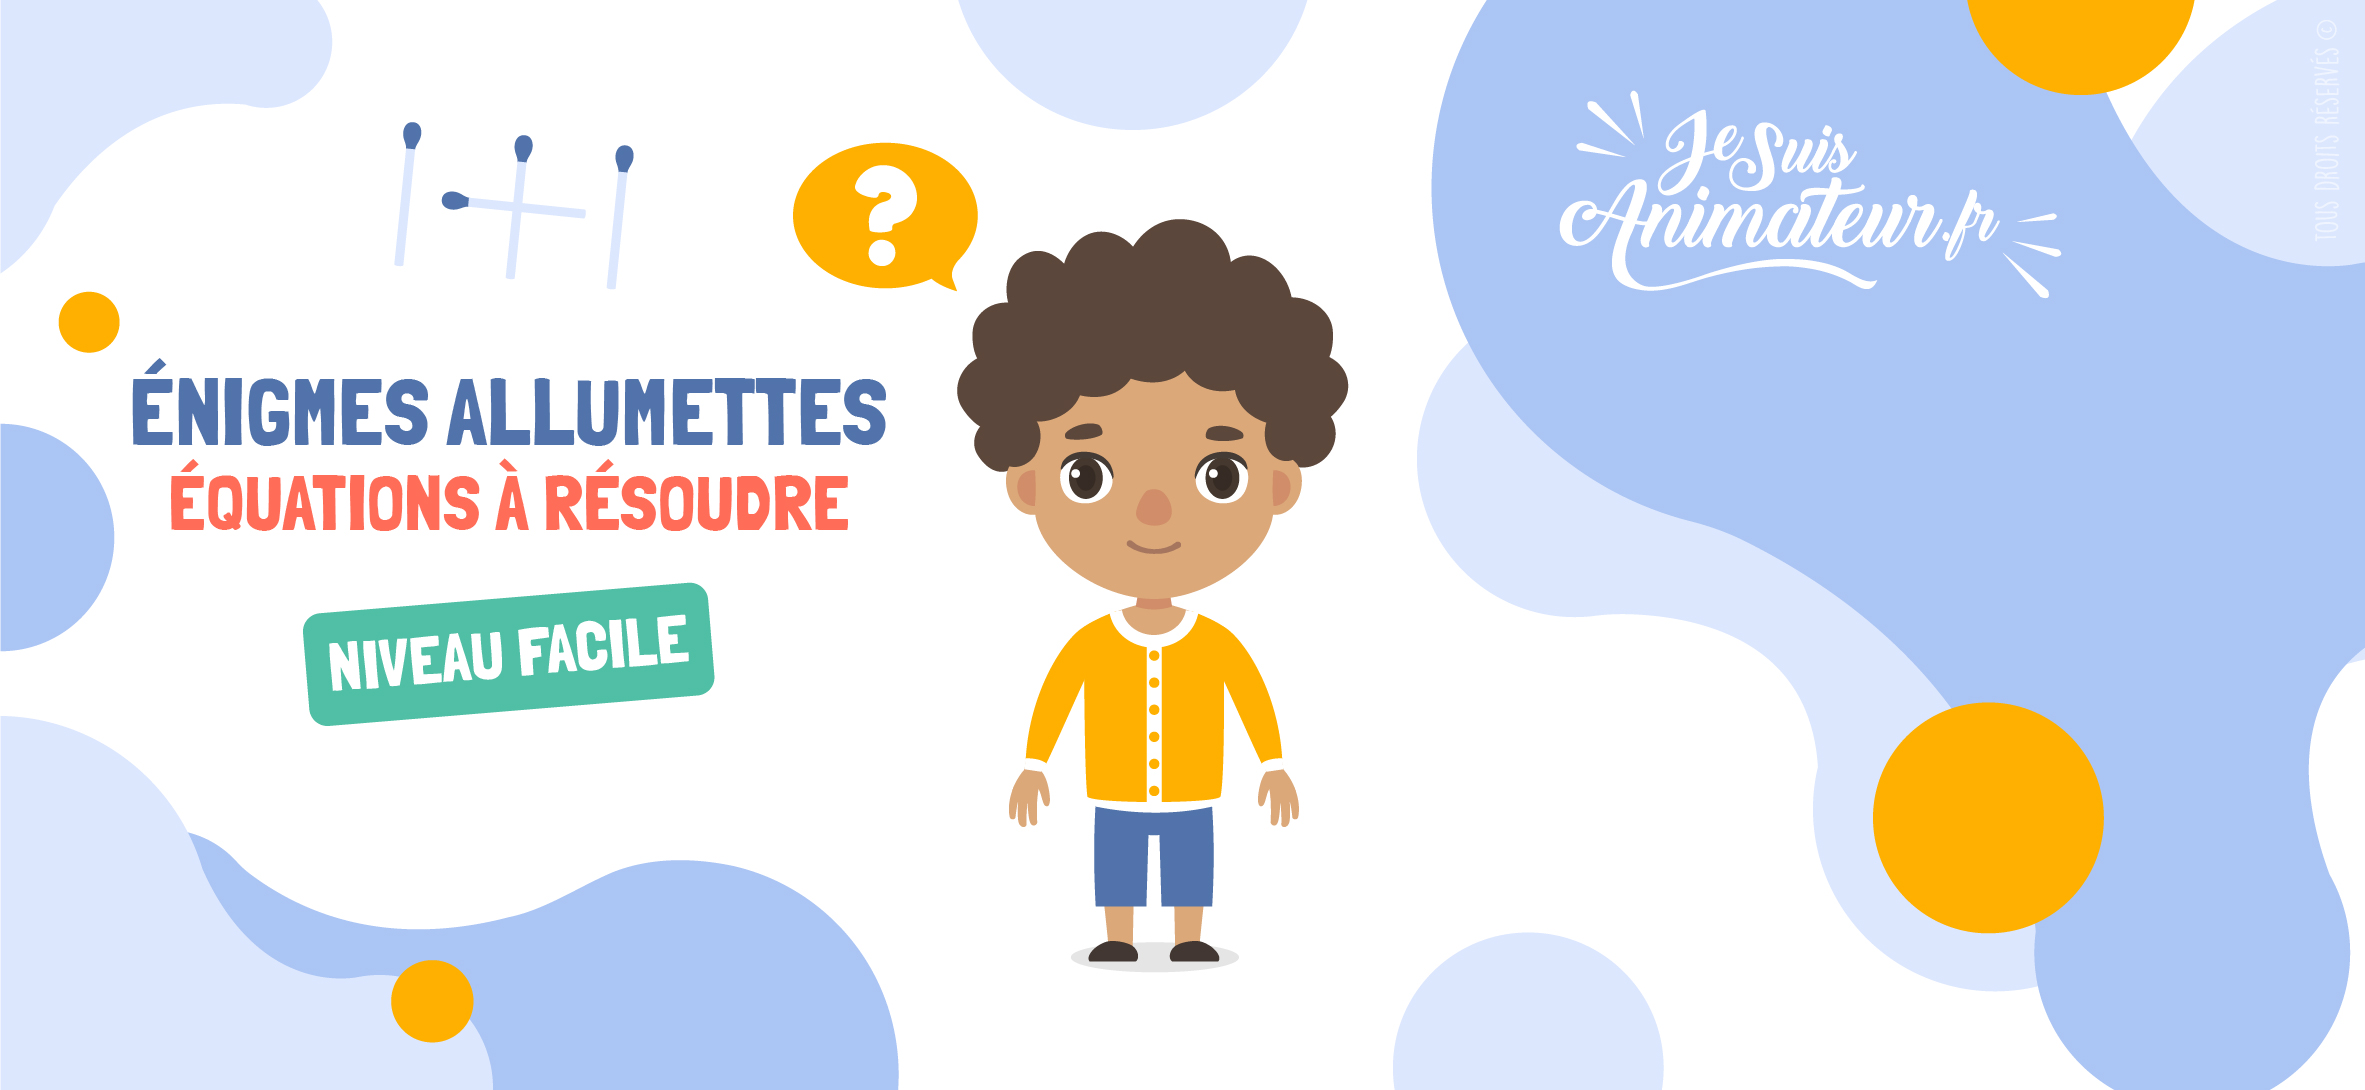 Énigmes et casses-têtes avec des équations d’allumettes (niveau facile) | JeSuisAnimateur.fr